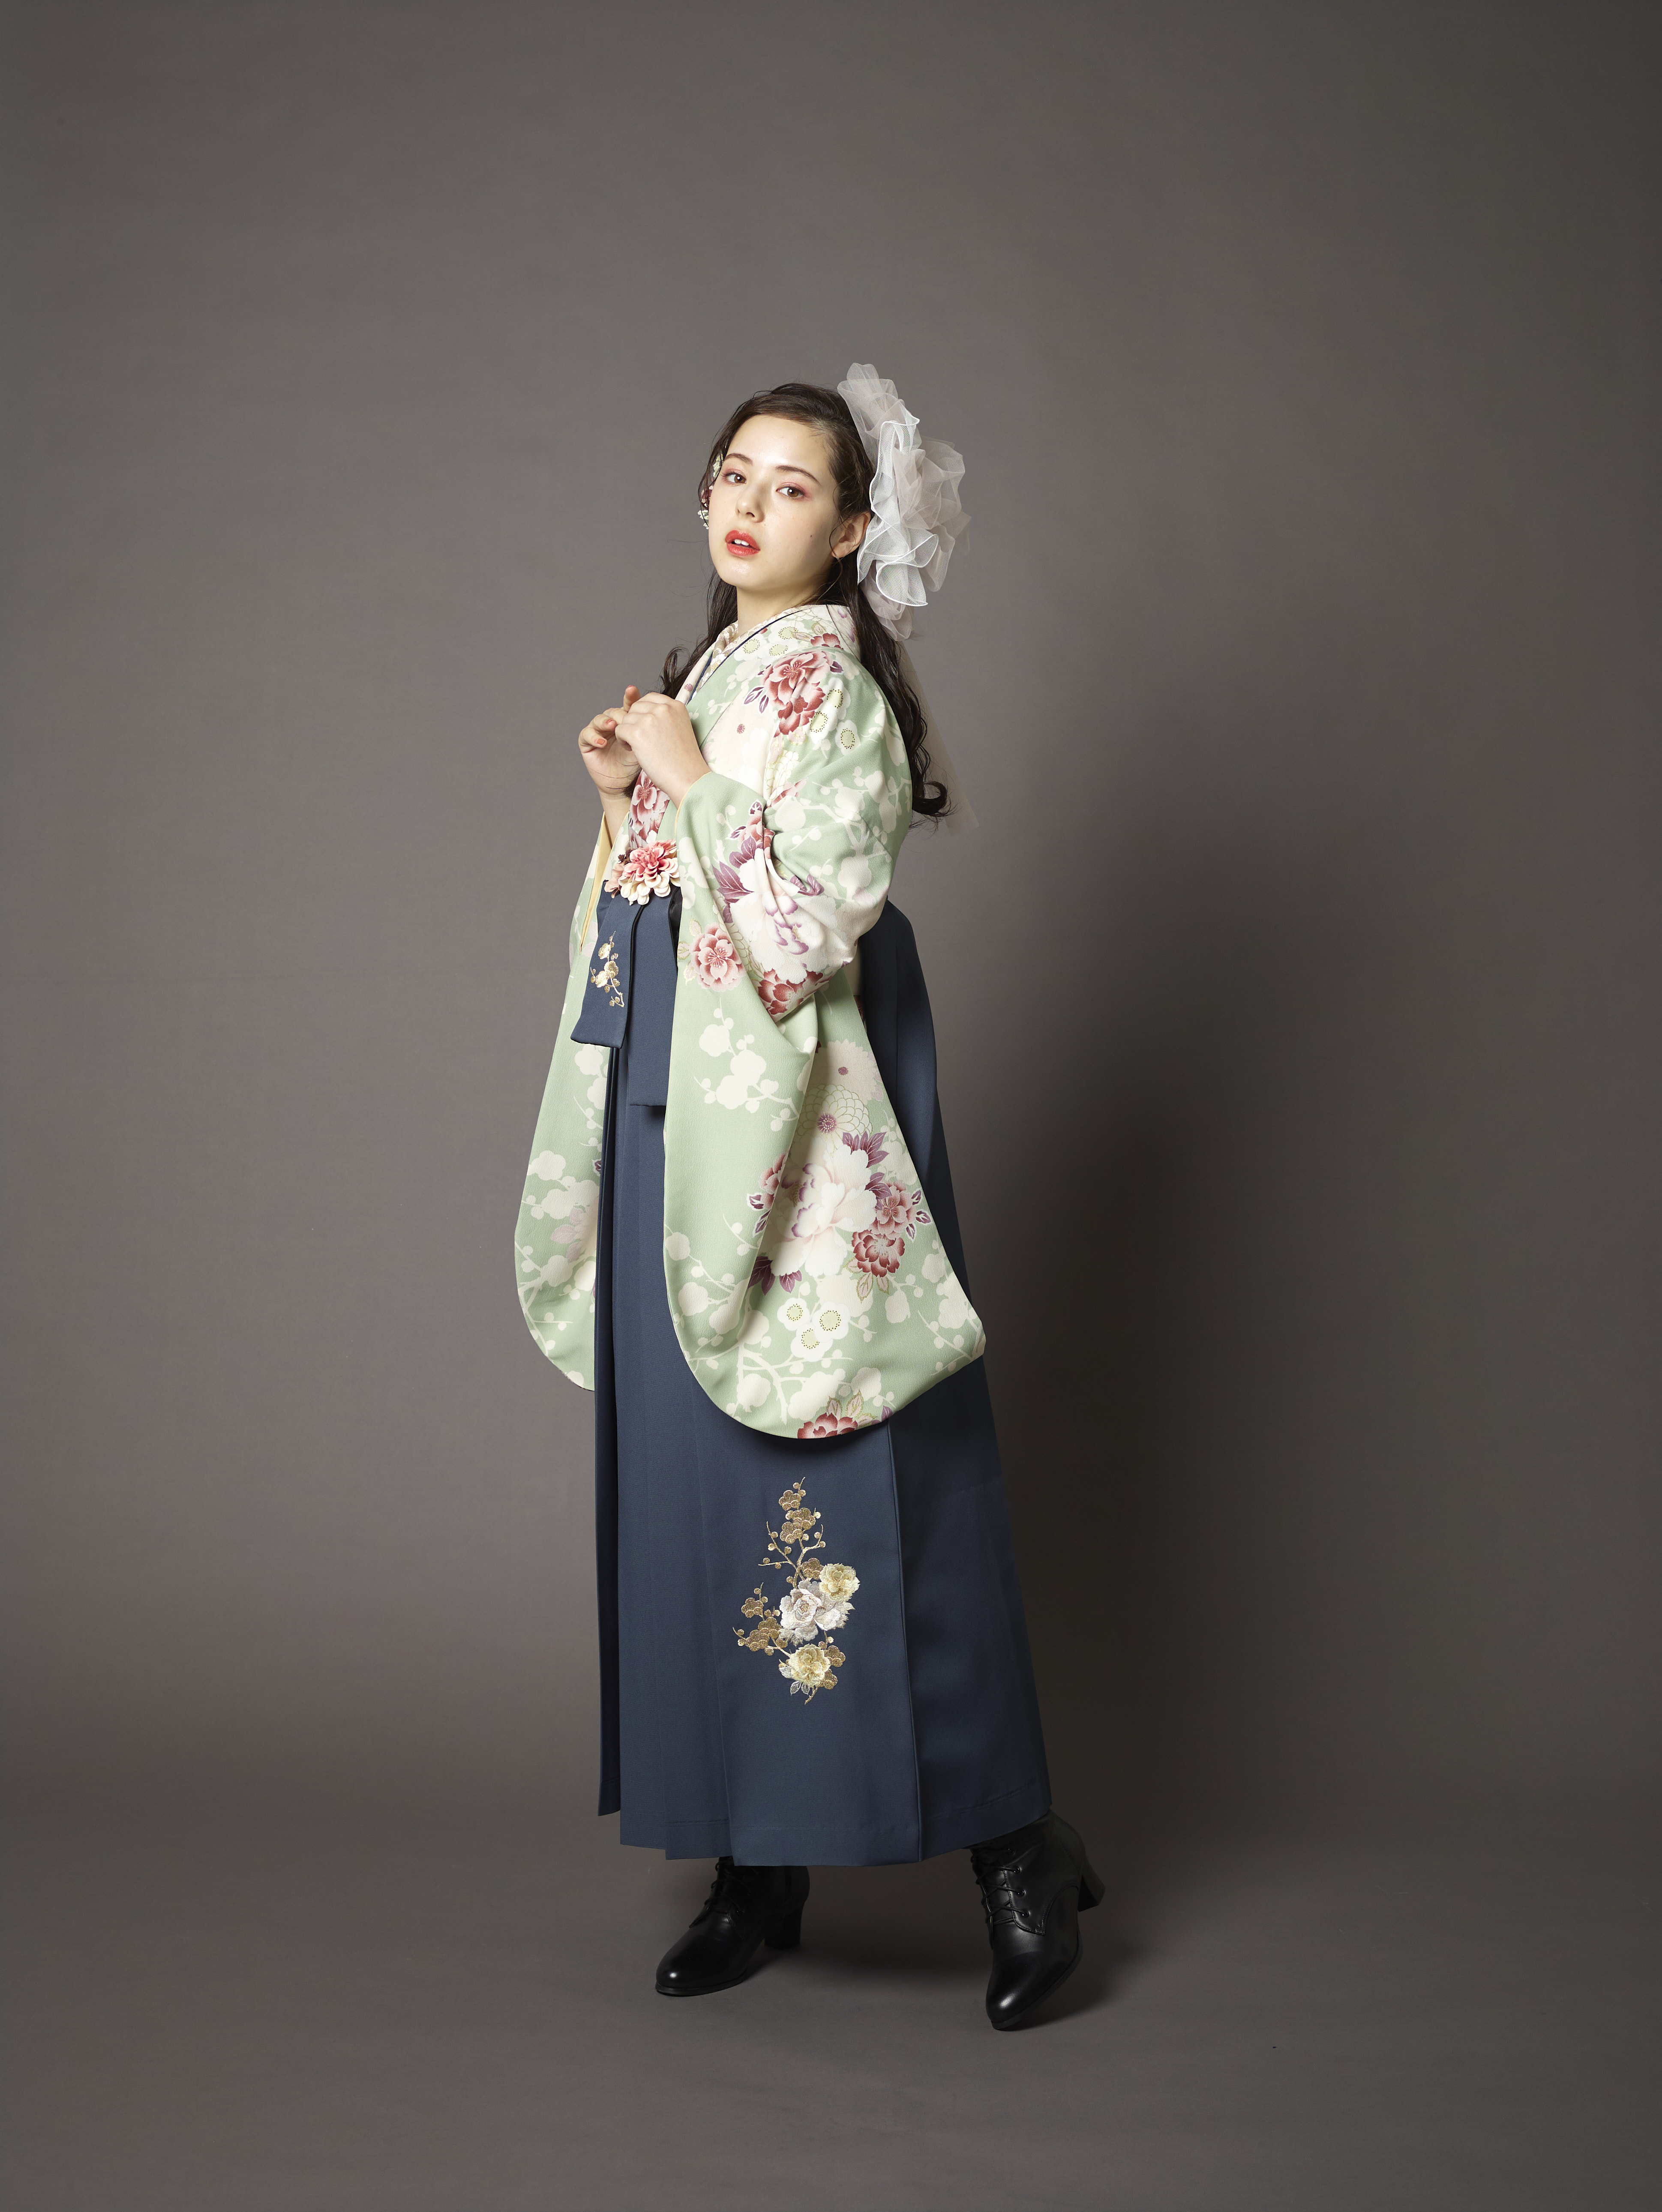 山本寛斎（ヤマモトカンサイ）ブランドの、緑地に白とピンクの花柄の二尺袖と、黒の袴の女性用卒業式袴を着用した全身写真